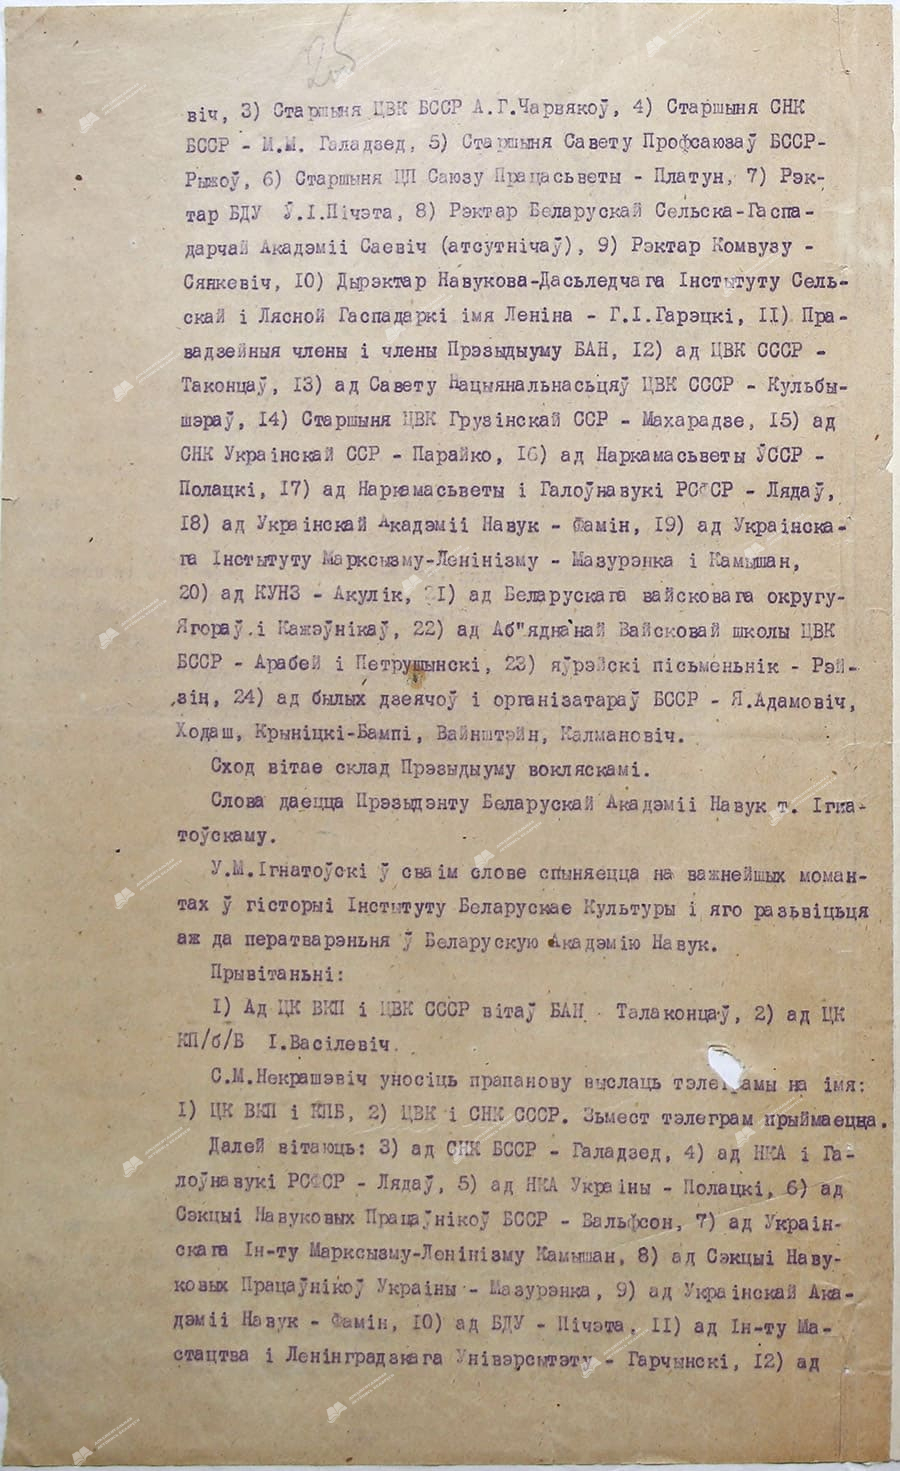 Протокол торжественного открытия Белорусской академии наук в Доме «Культуры» 1 января 1929 года-стр. 1